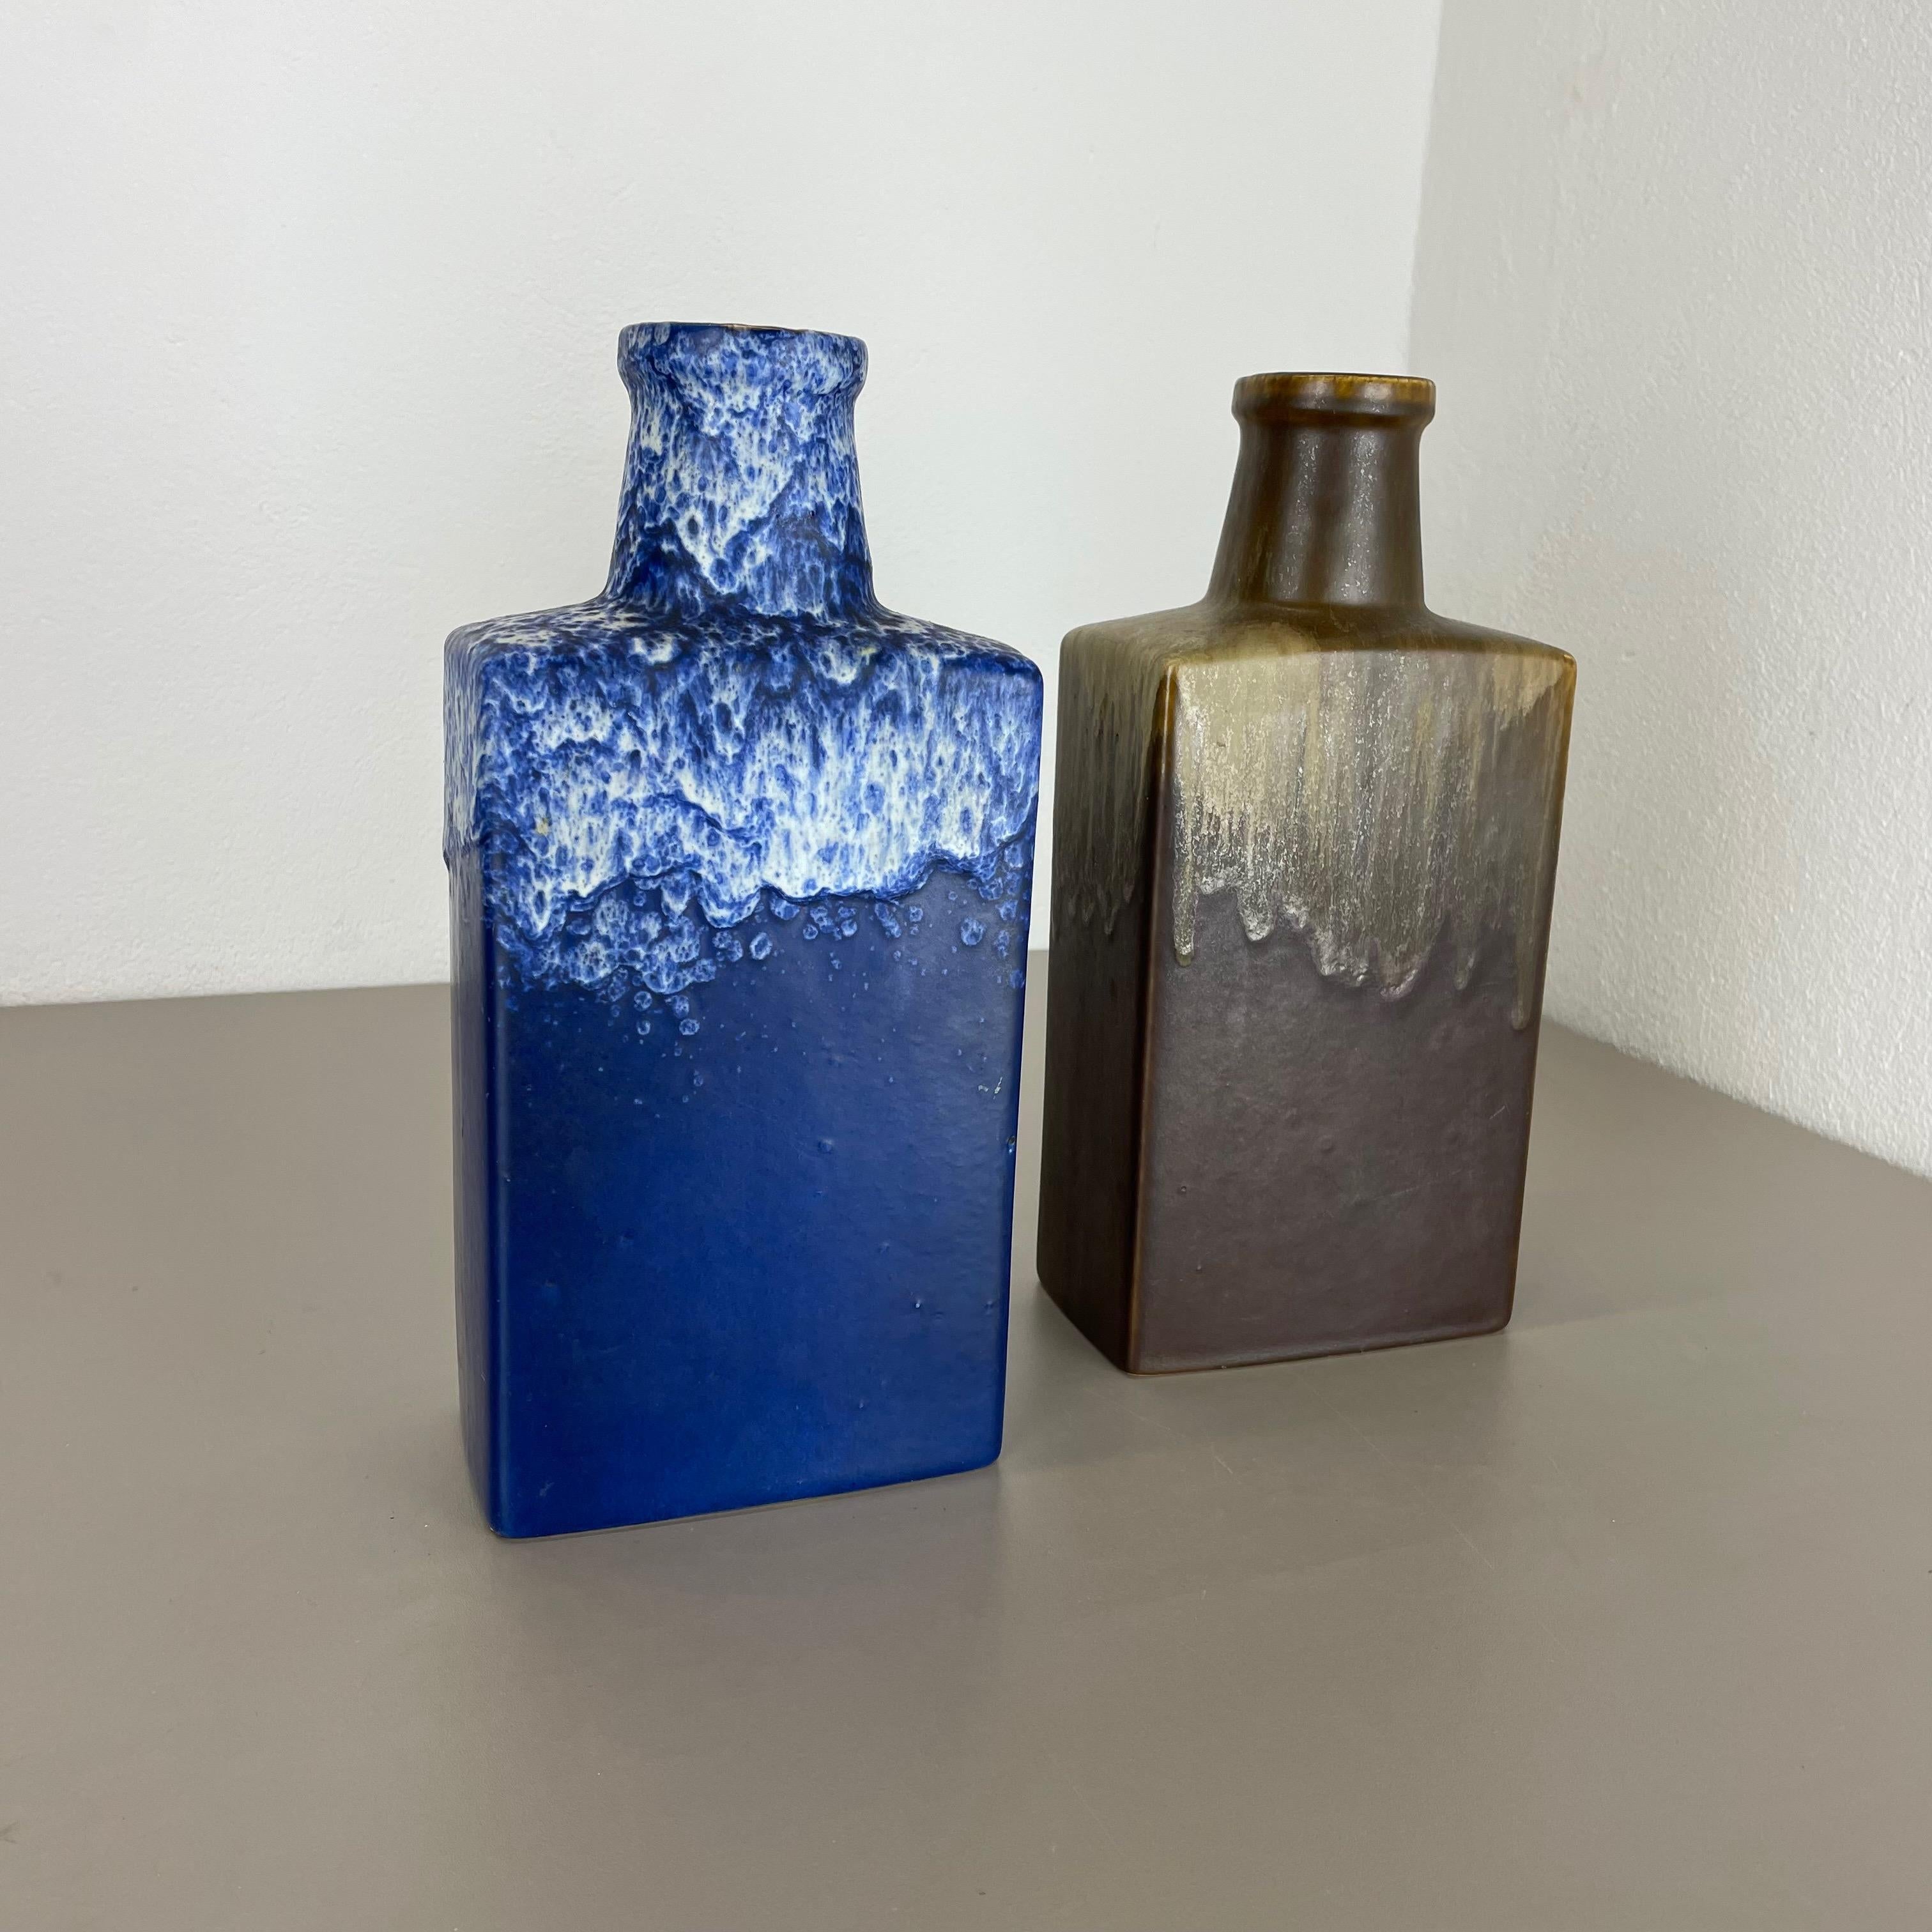 Artikel:

Set aus zwei fetten Lavakunstvasen


Produzent:

Scheurich, Deutschland



Jahrzehnt:

1970s


Diese originalen Vintage-Vasen wurden in den 1970er Jahren in Deutschland hergestellt. Sie ist aus Keramik in fetter Lava-Optik